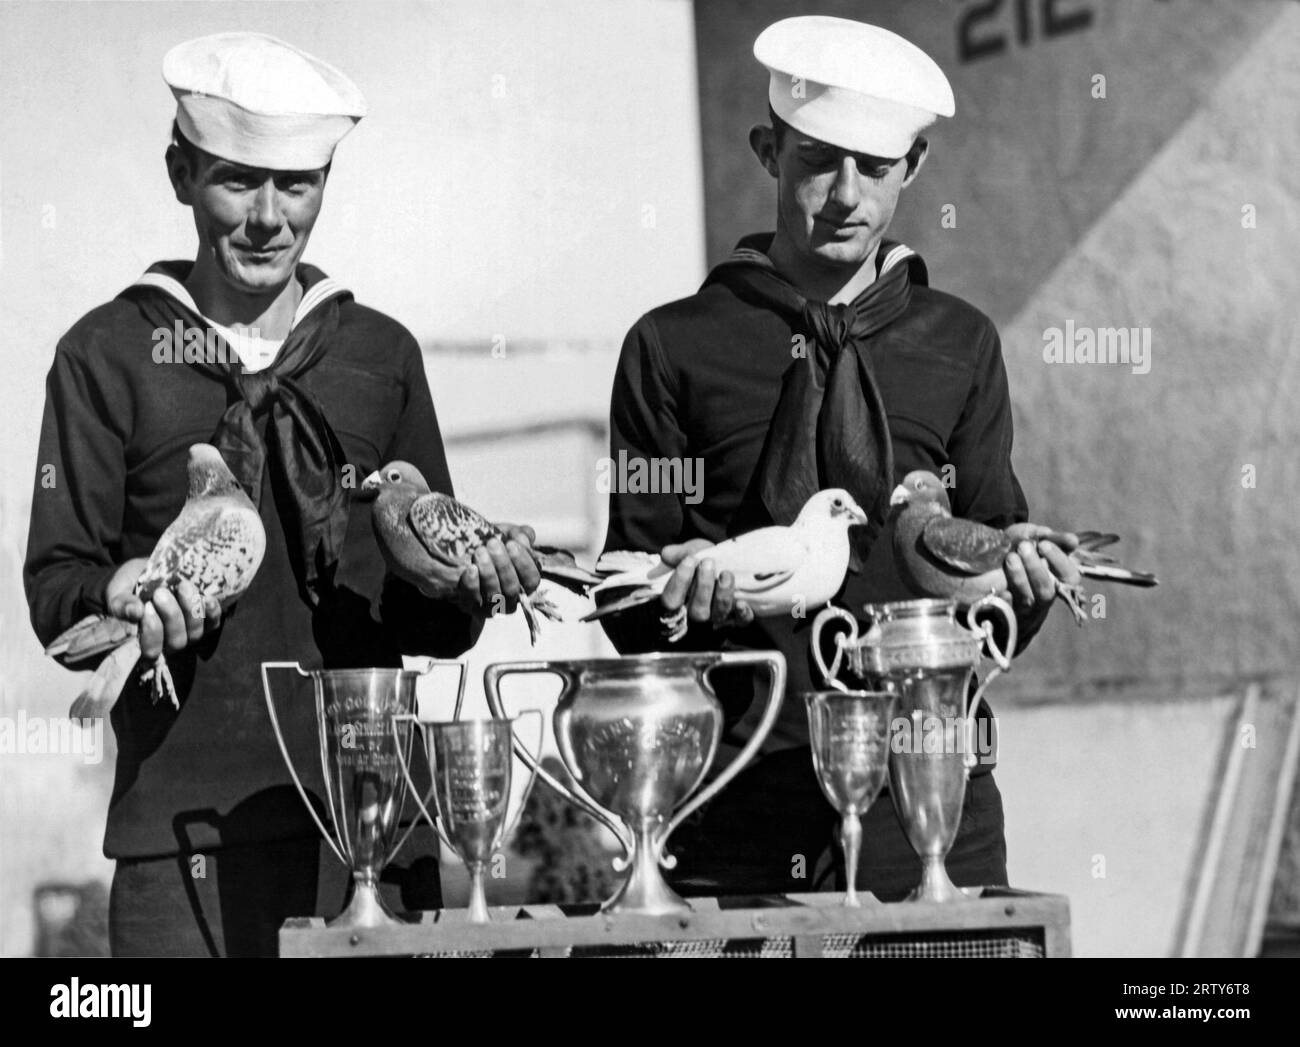 San Diego, Californie 1928 ces quatre pigeons voyageurs sont les ths champions de l'US Navy. Ils ont respectivement remporté, l-r, le 255 mile, le 300 mile, le 100 mile et la course San Francisco à San Diego, et le dernier à droite, le pigeon le plus rapide de la Navy, vainqueur de la course du 400 mile. Banque D'Images